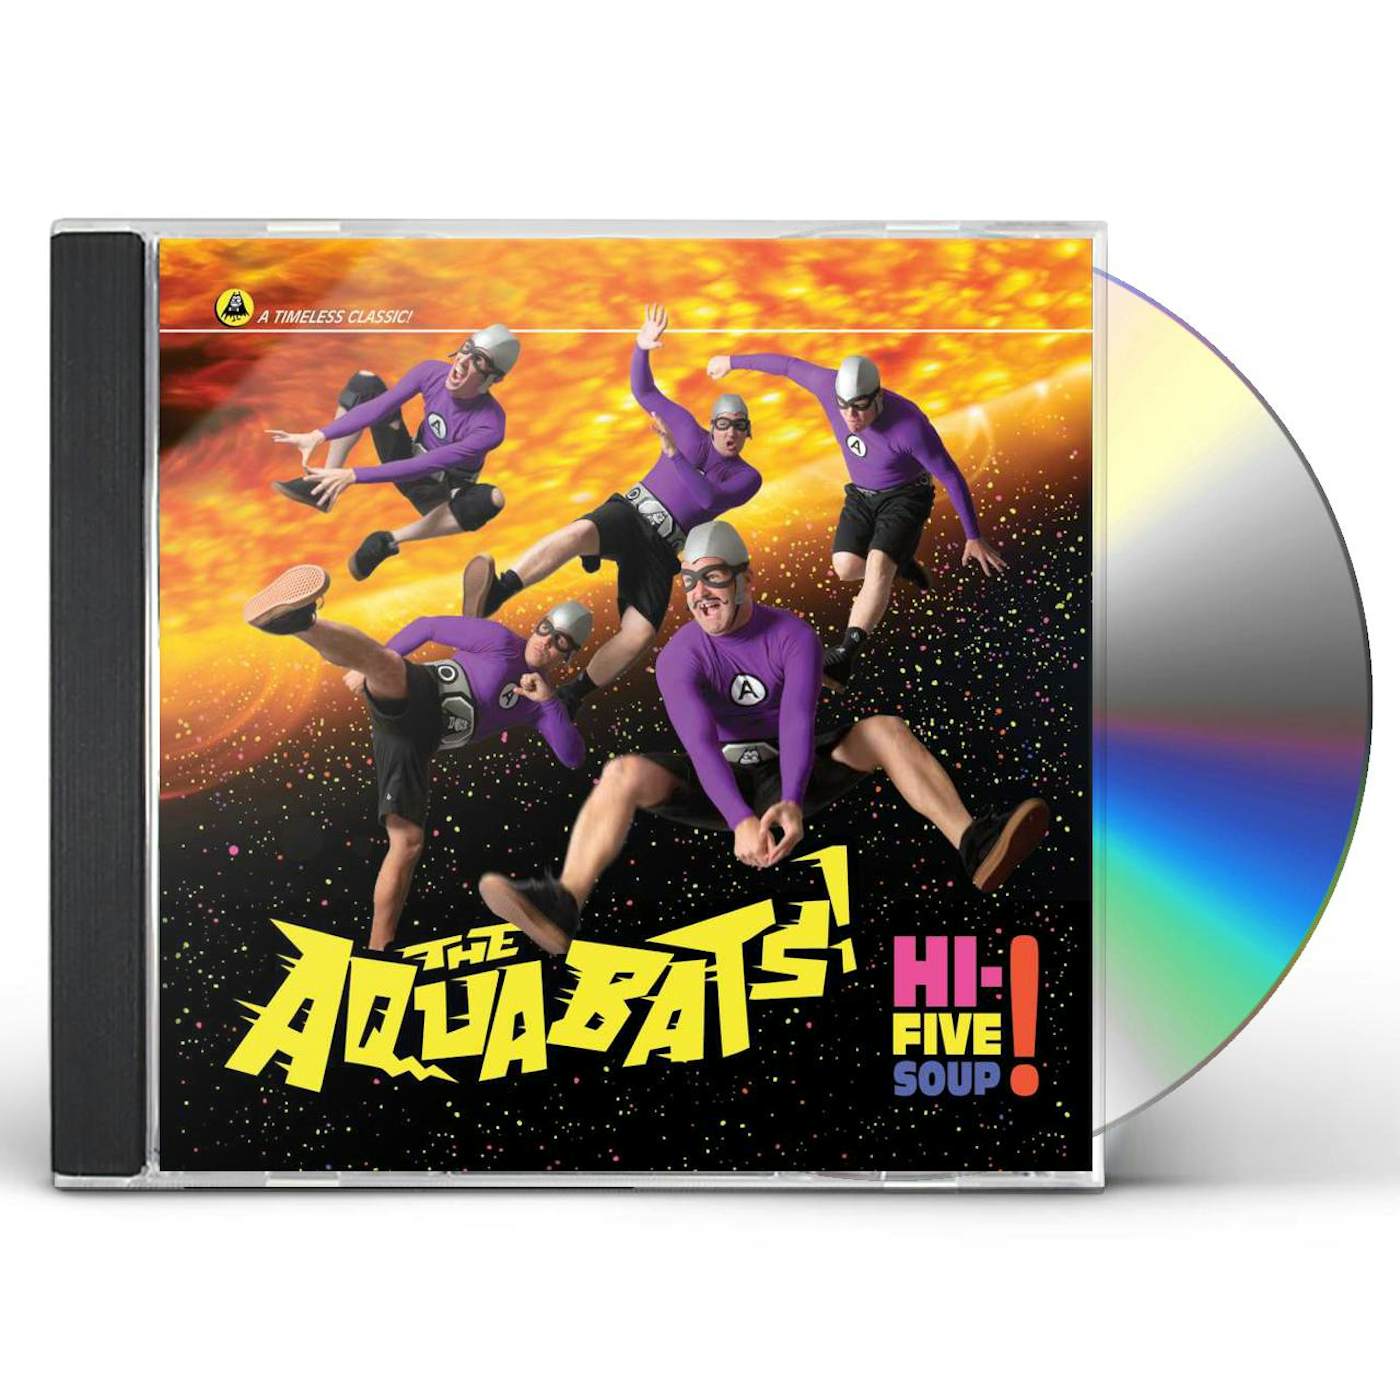 The Aquabats! HI-FIVE SOUP CD